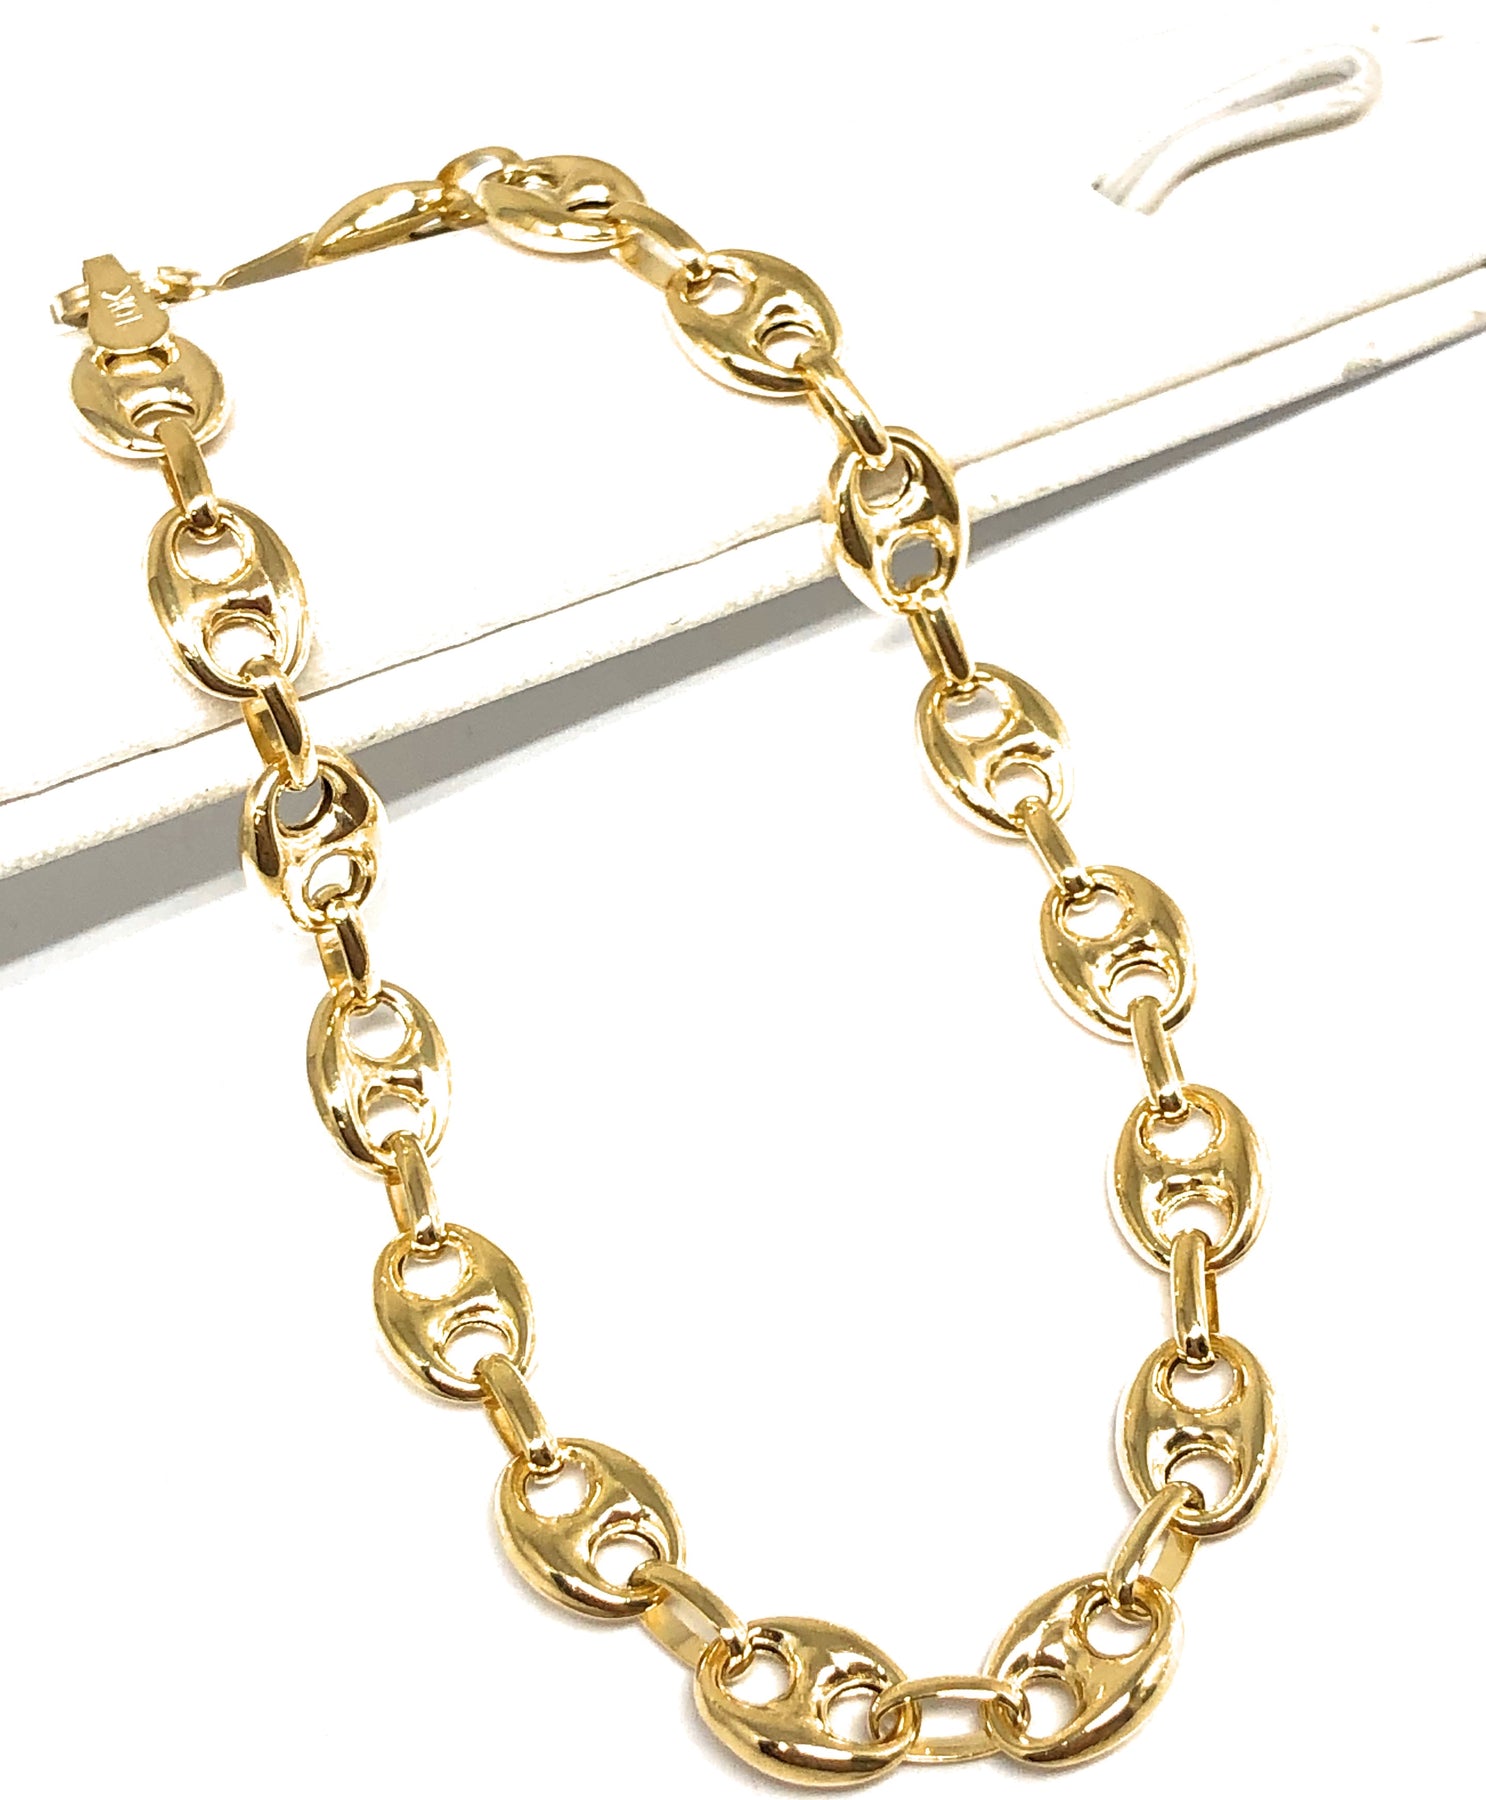 Solid Gold "Gucci" Cadena de enlace 16-24 pulgadas & Co Jewelry